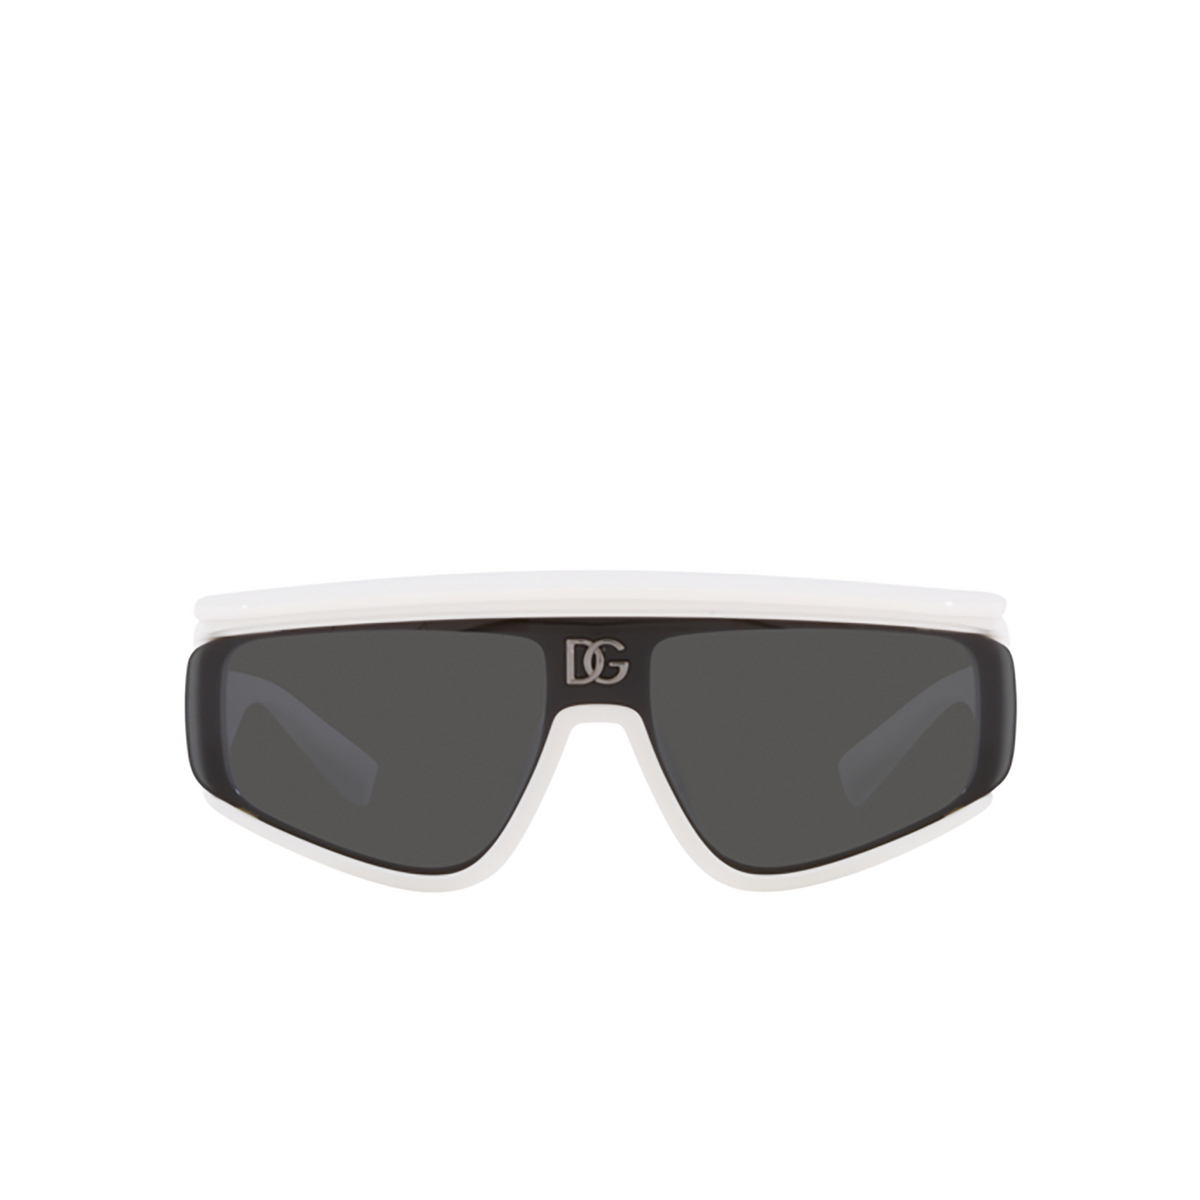 Dolce & Gabbana DG6177 Sunglasses 331287 White - front view